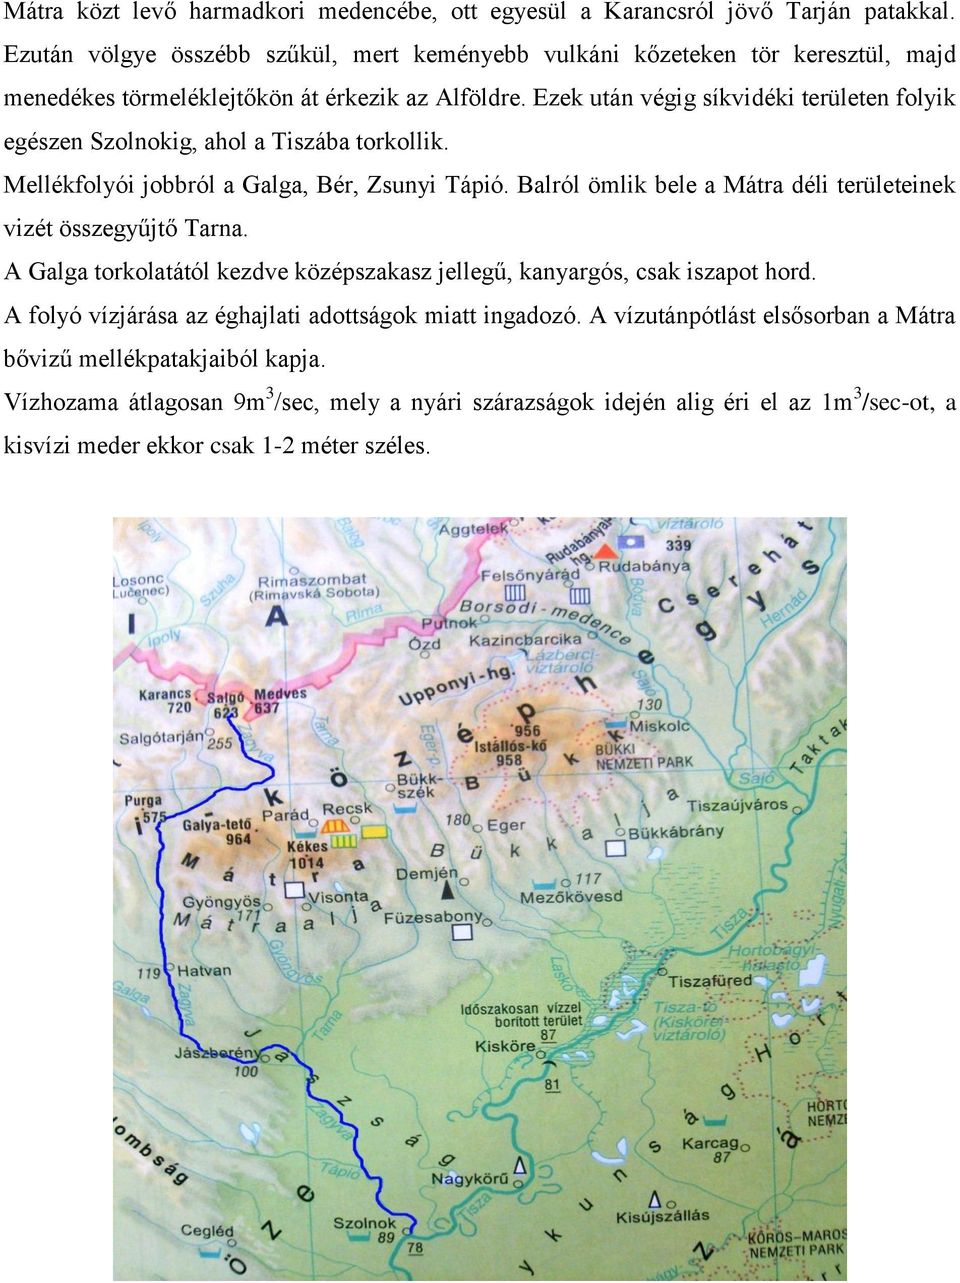 Ezek után végig síkvidéki területen folyik egészen Szolnokig, ahol a Tiszába torkollik. Mellékfolyói jobbról a Galga, Bér, Zsunyi Tápió.